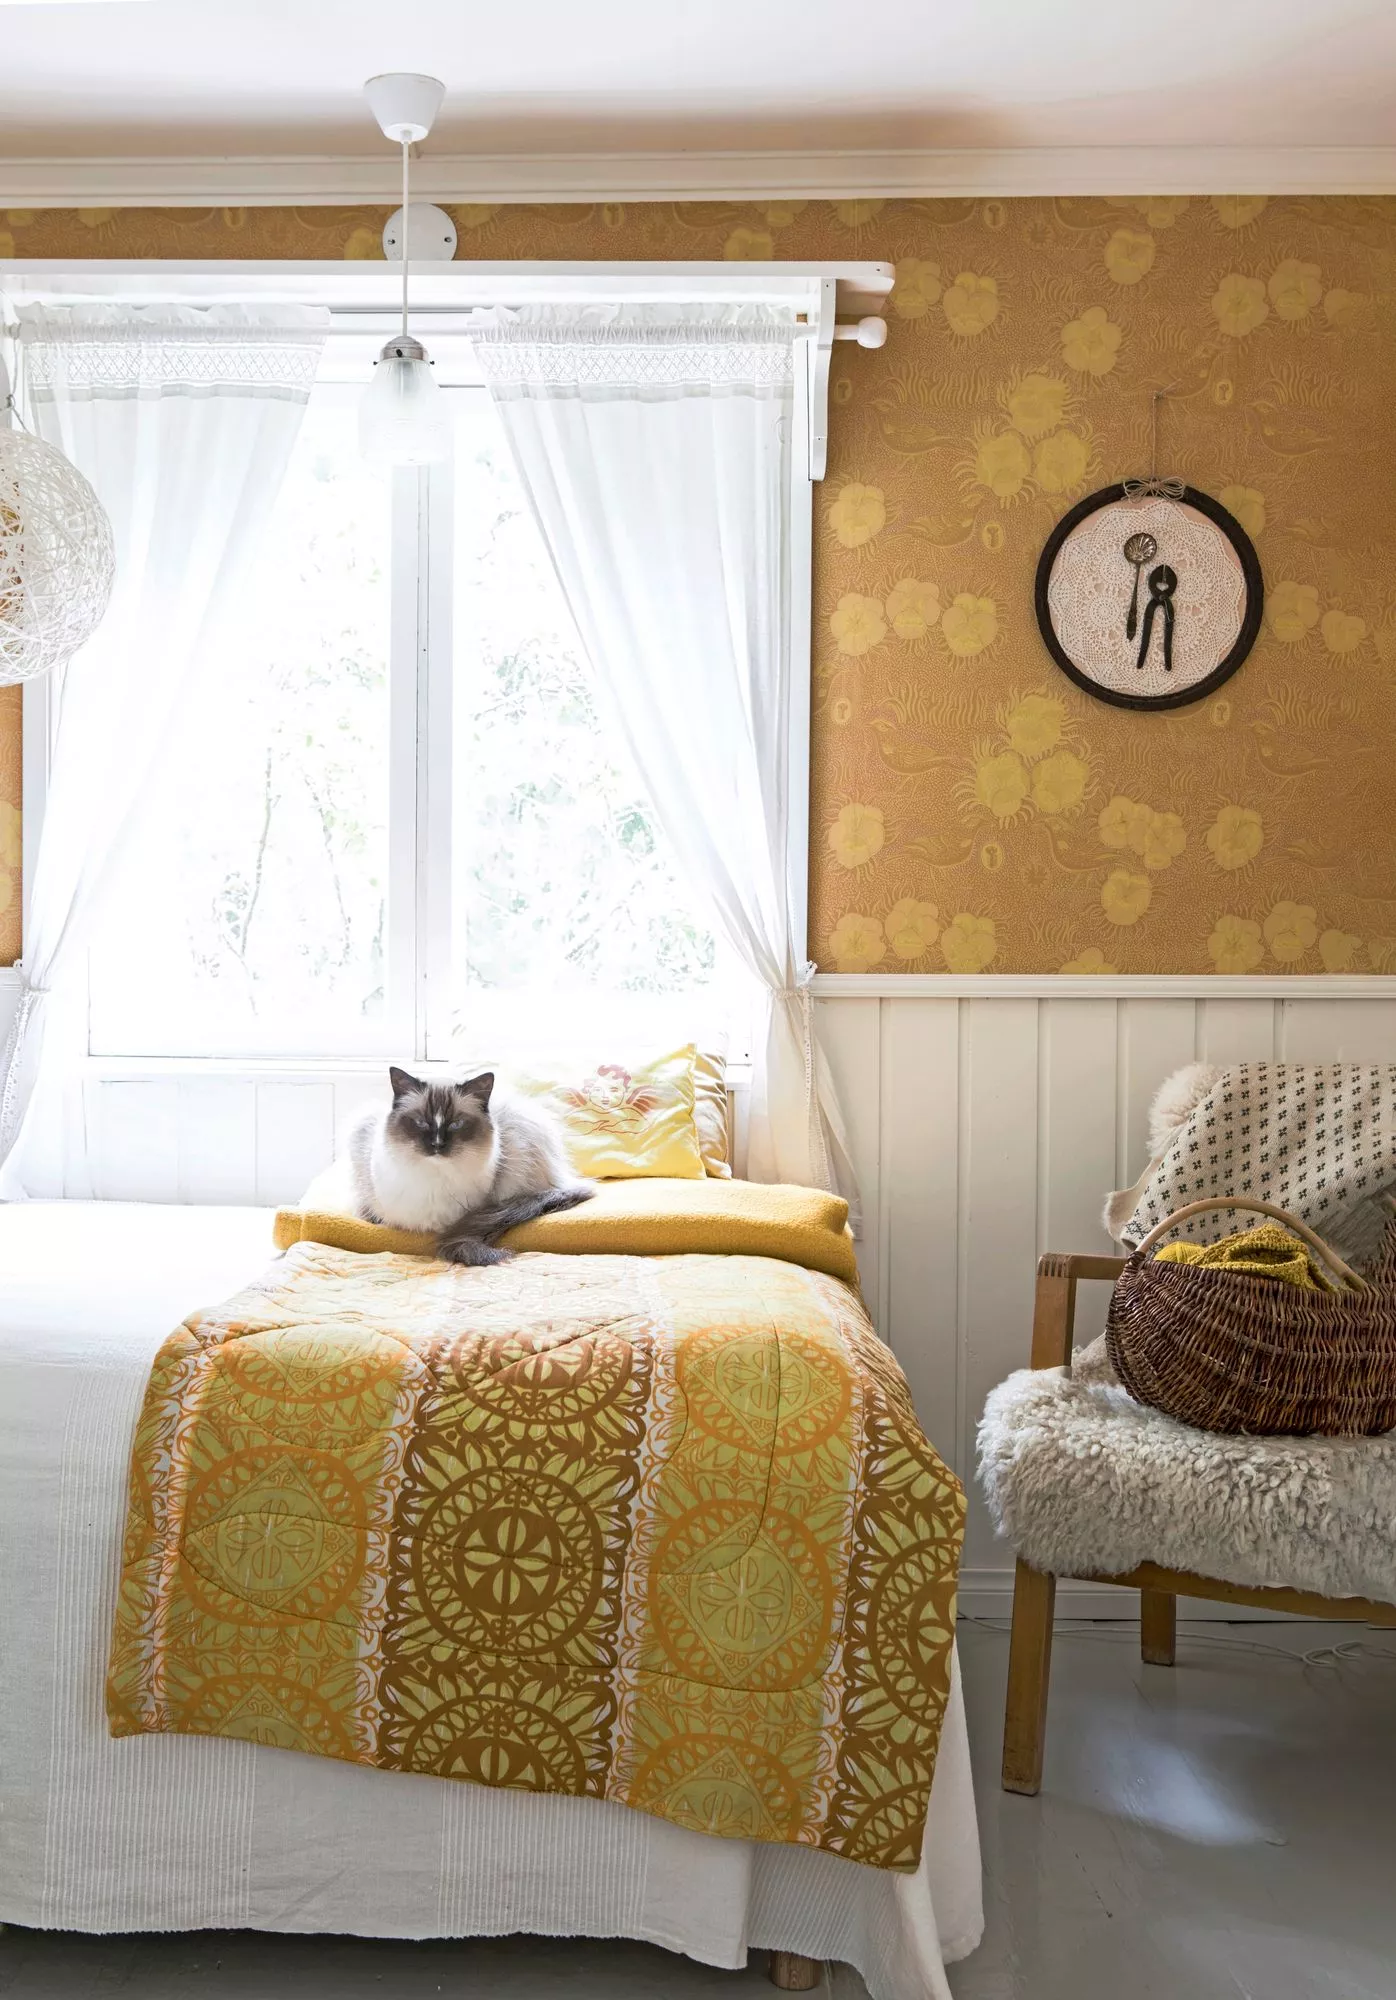 Sannan voimaväri keltainen loistaa niin makuuhuoneen tekstiileissä kuin tapetissakin.